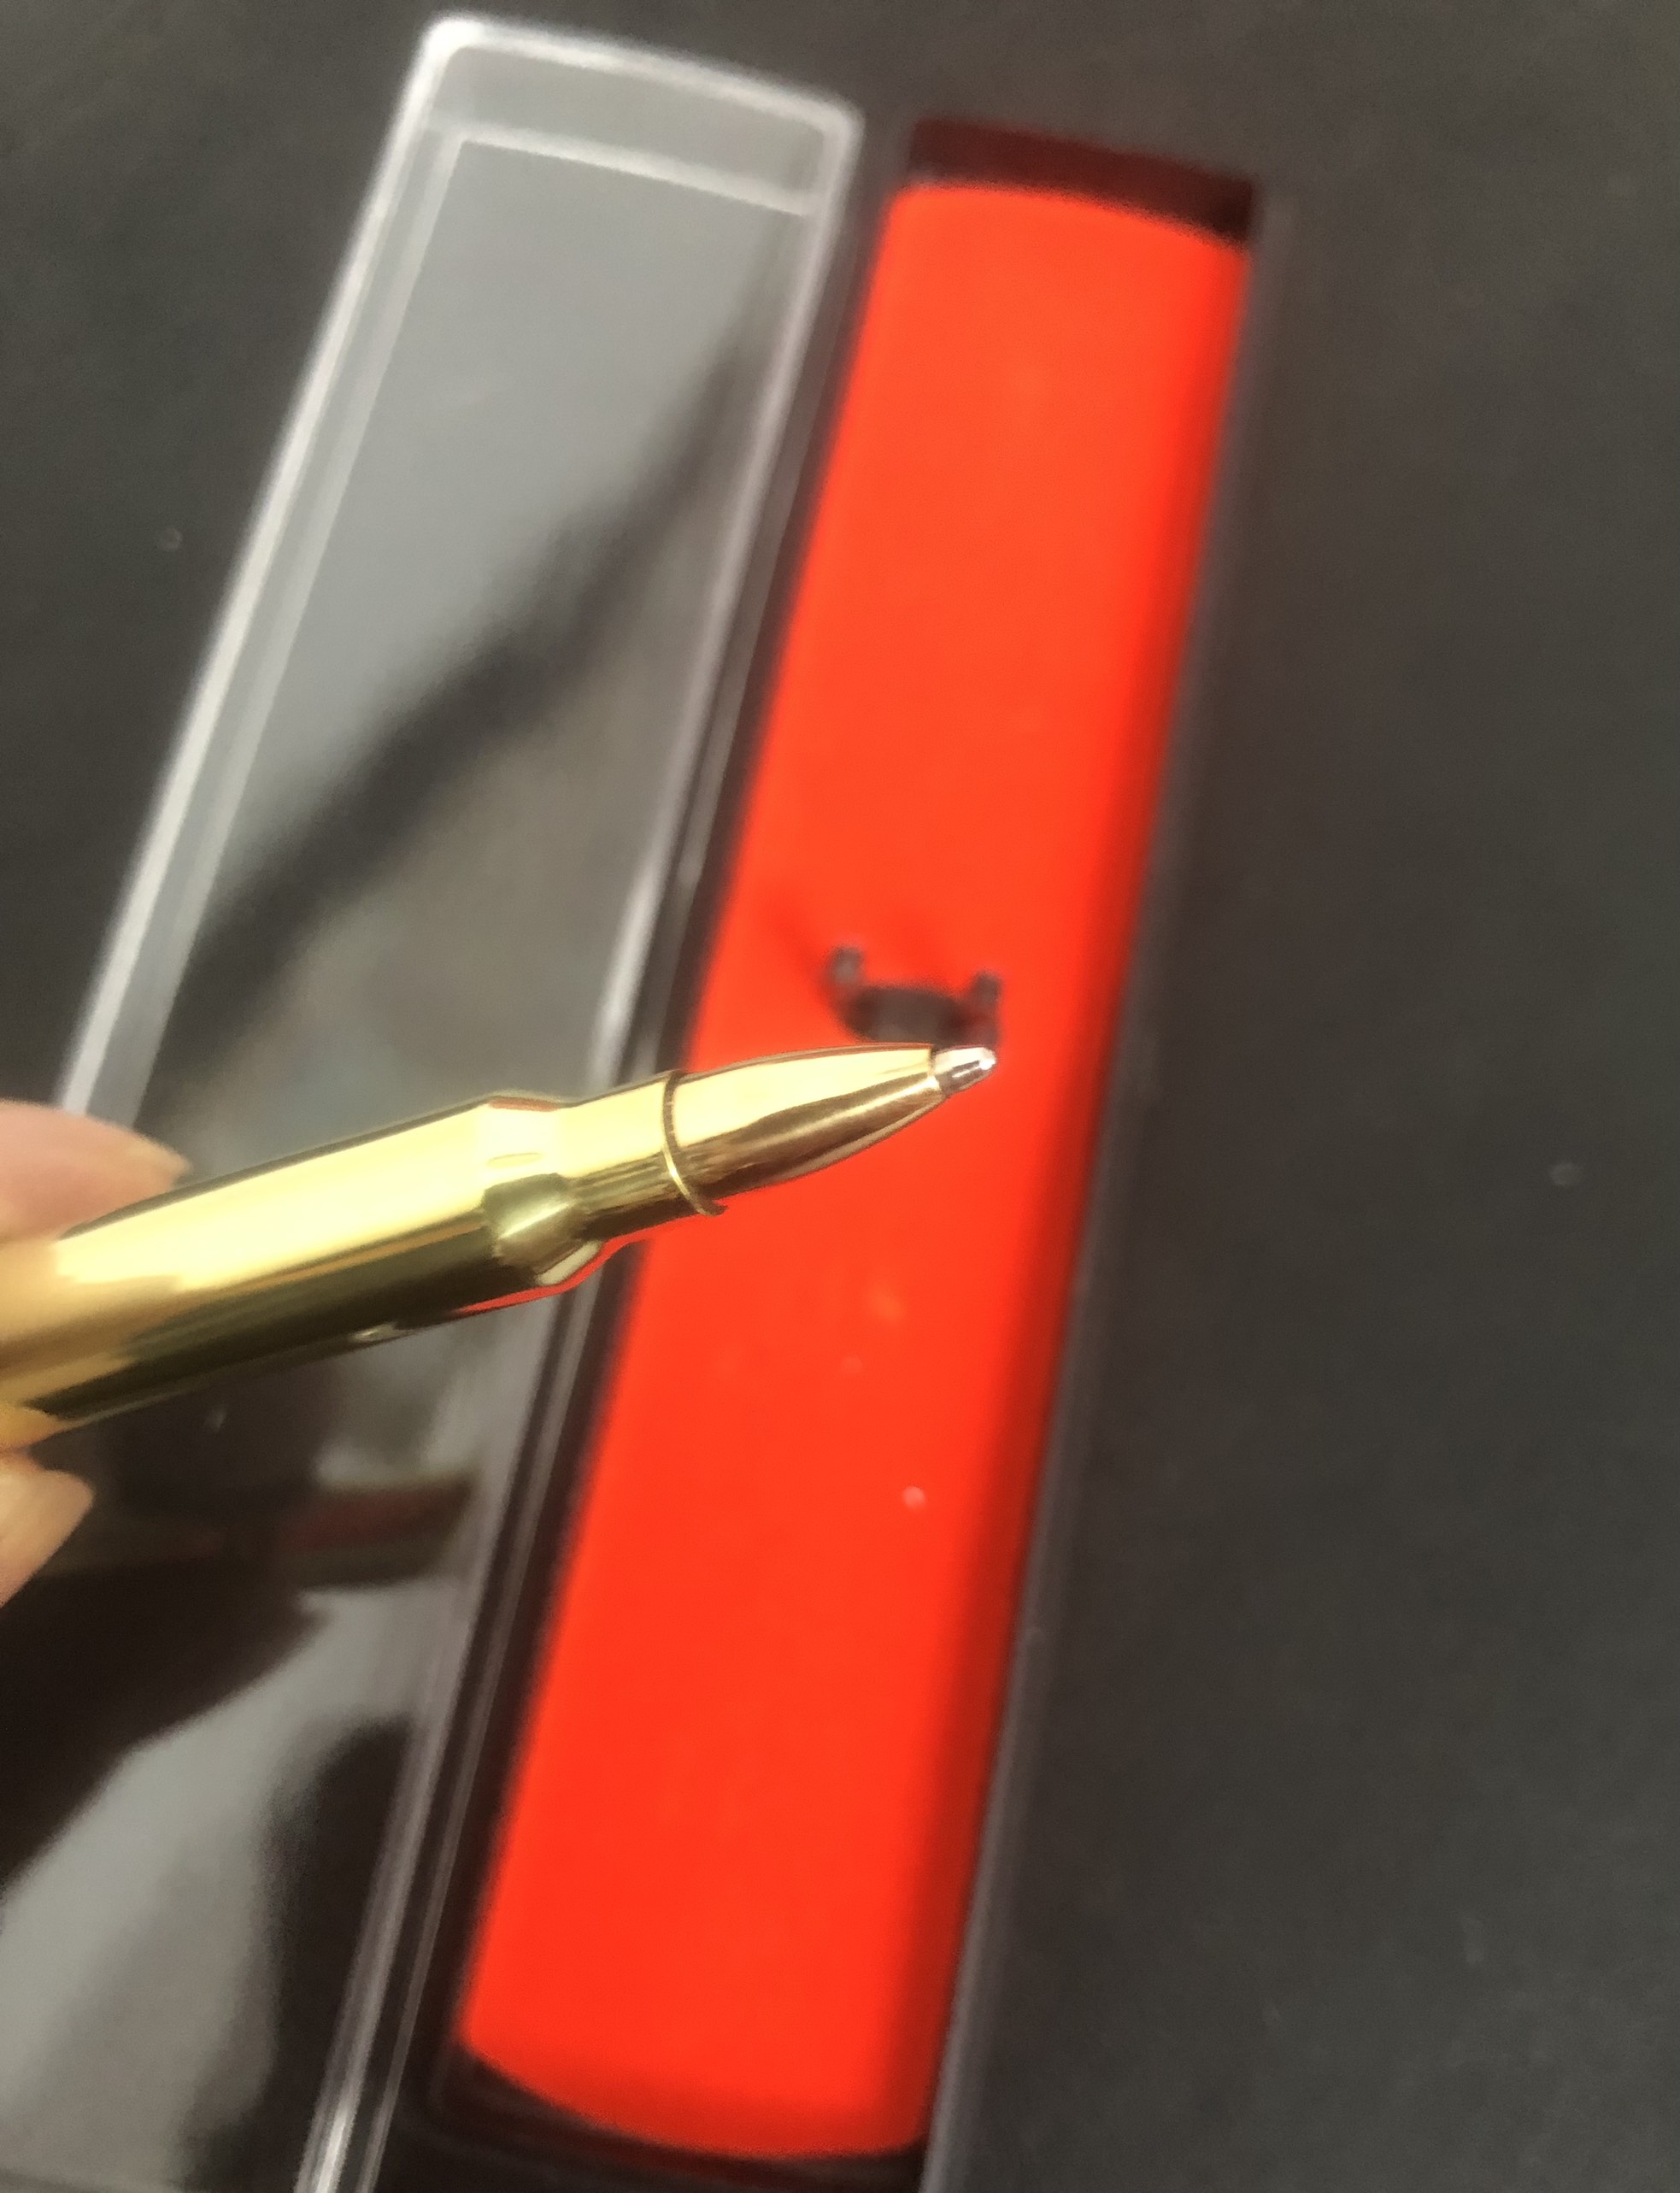 Bút vỏ đạn R15 chế tác thủ công, có hộp bảo quản sang trọng